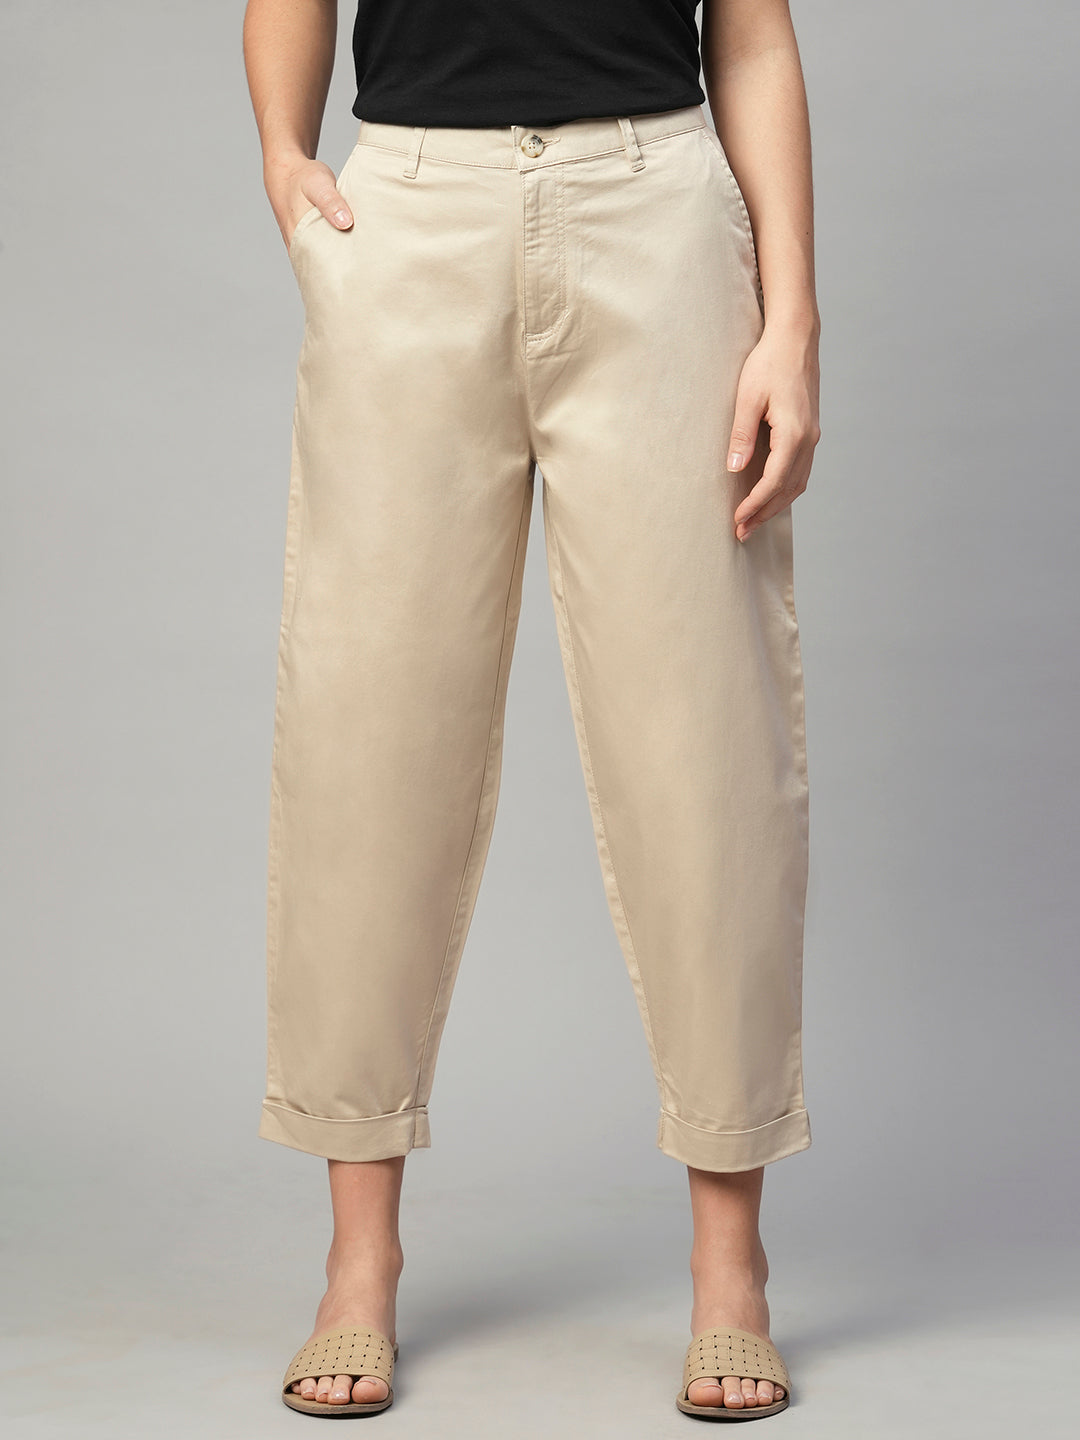 Women's Beige Cotton Elastane Loose Fit Pant